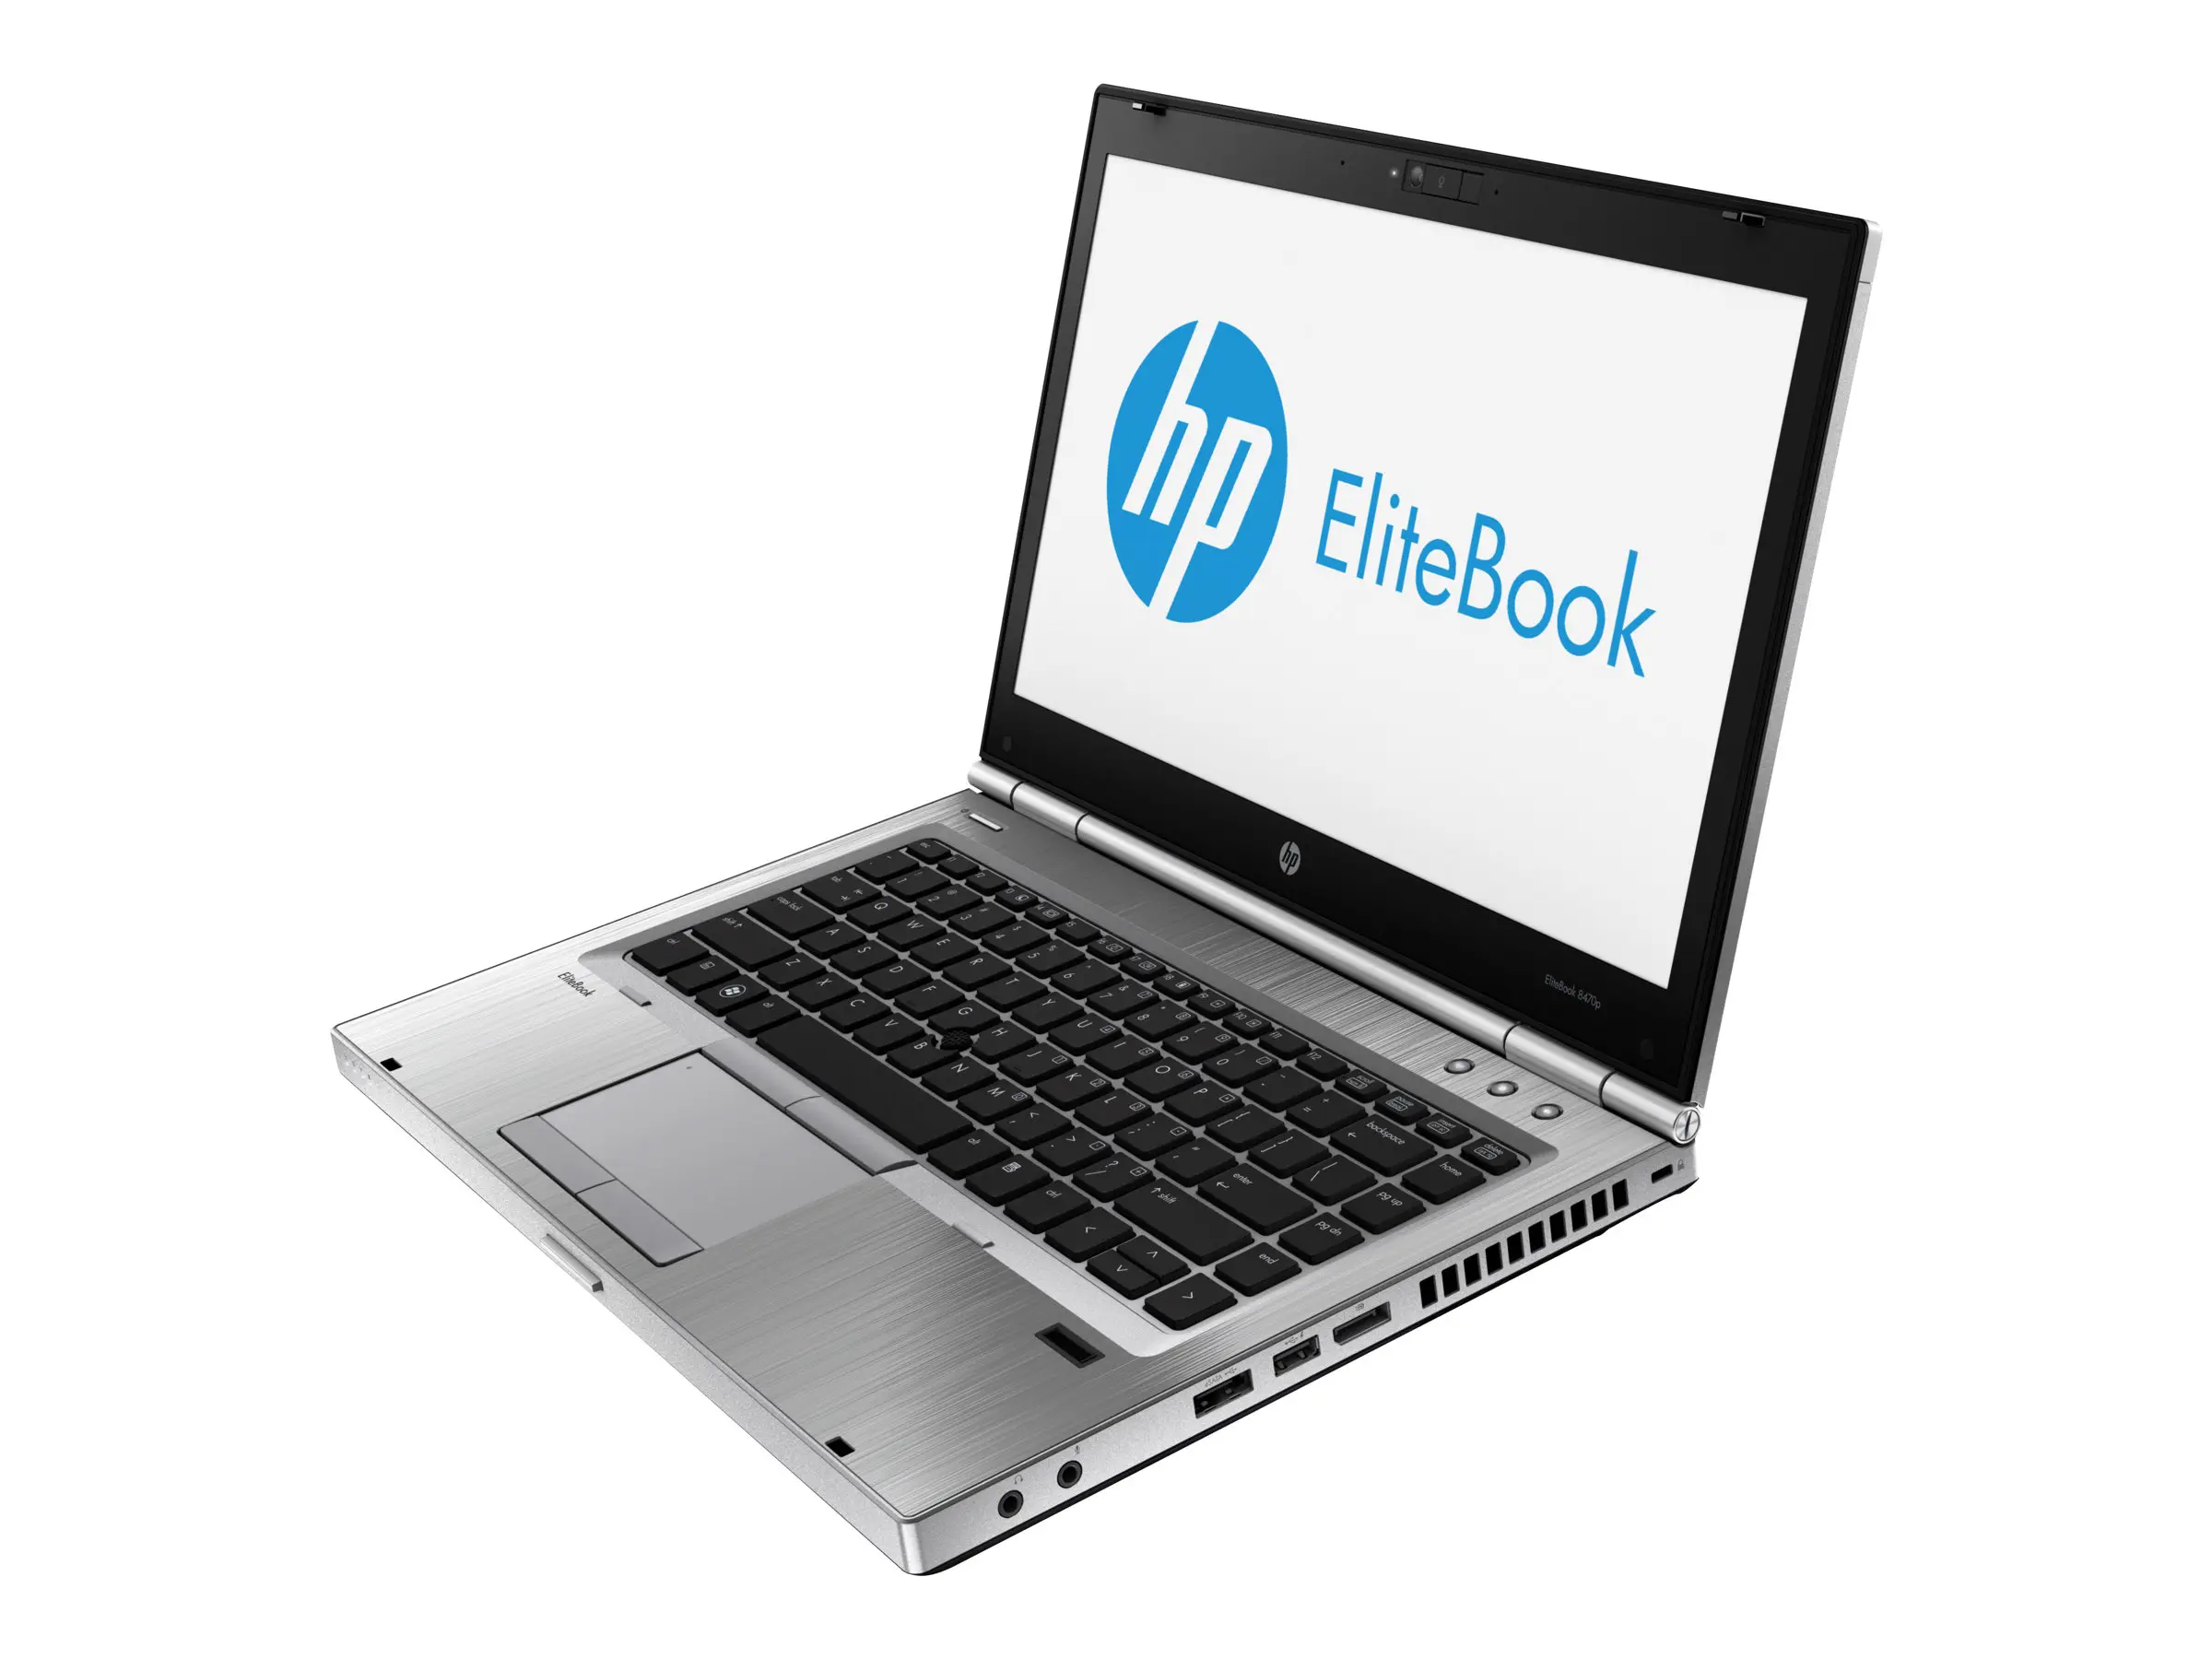 hewlett packard elitebook 8470p - What is the price of HP EliteBook 8470p Laptop